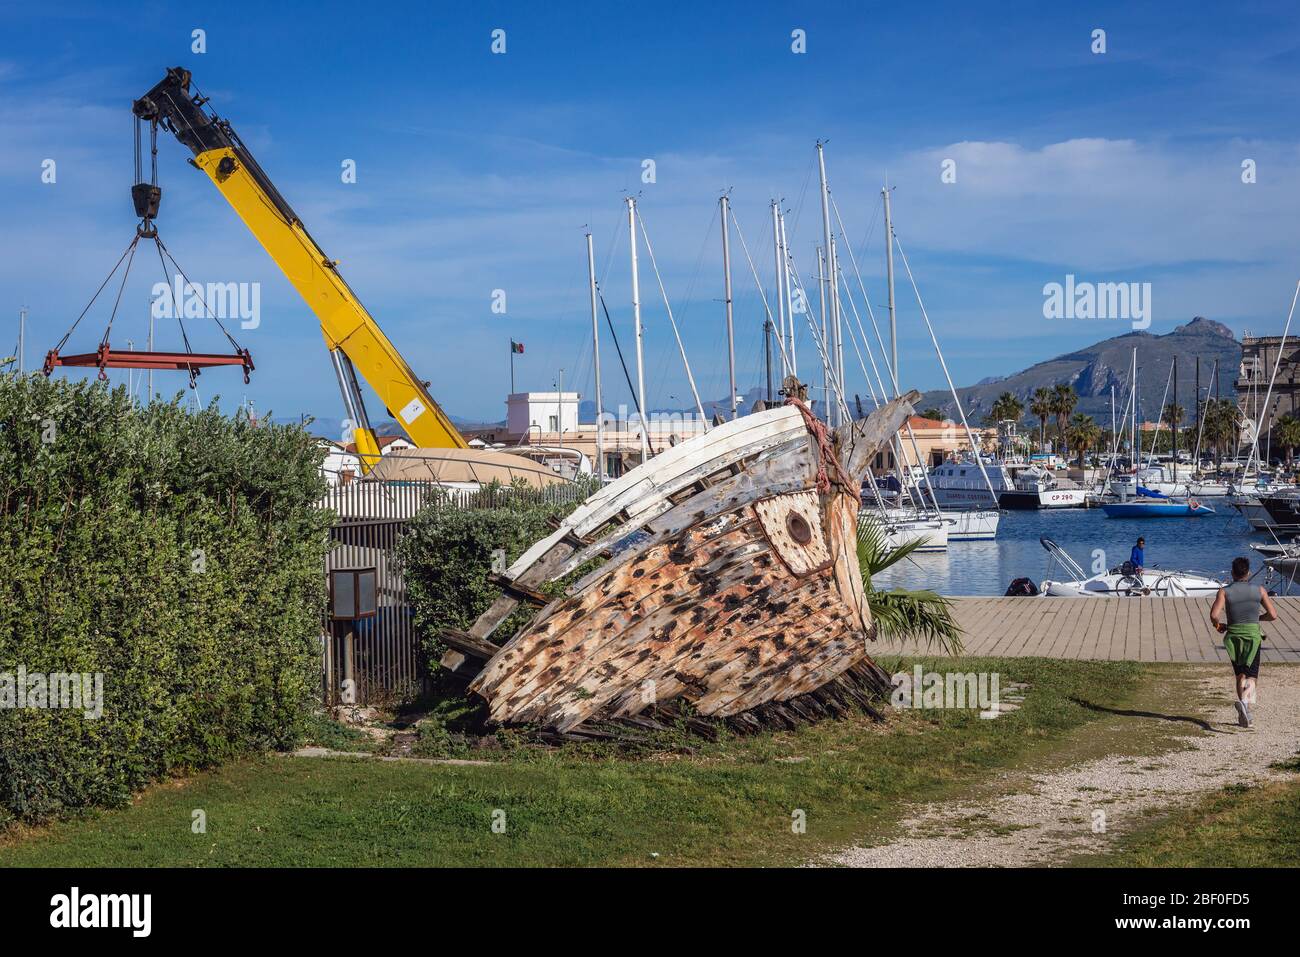 Vestiges de vieux bateaux dans la région de la Cala de Port de Palerme ville du sud de l'Italie, la capitale de la région autonome de Sicile Banque D'Images